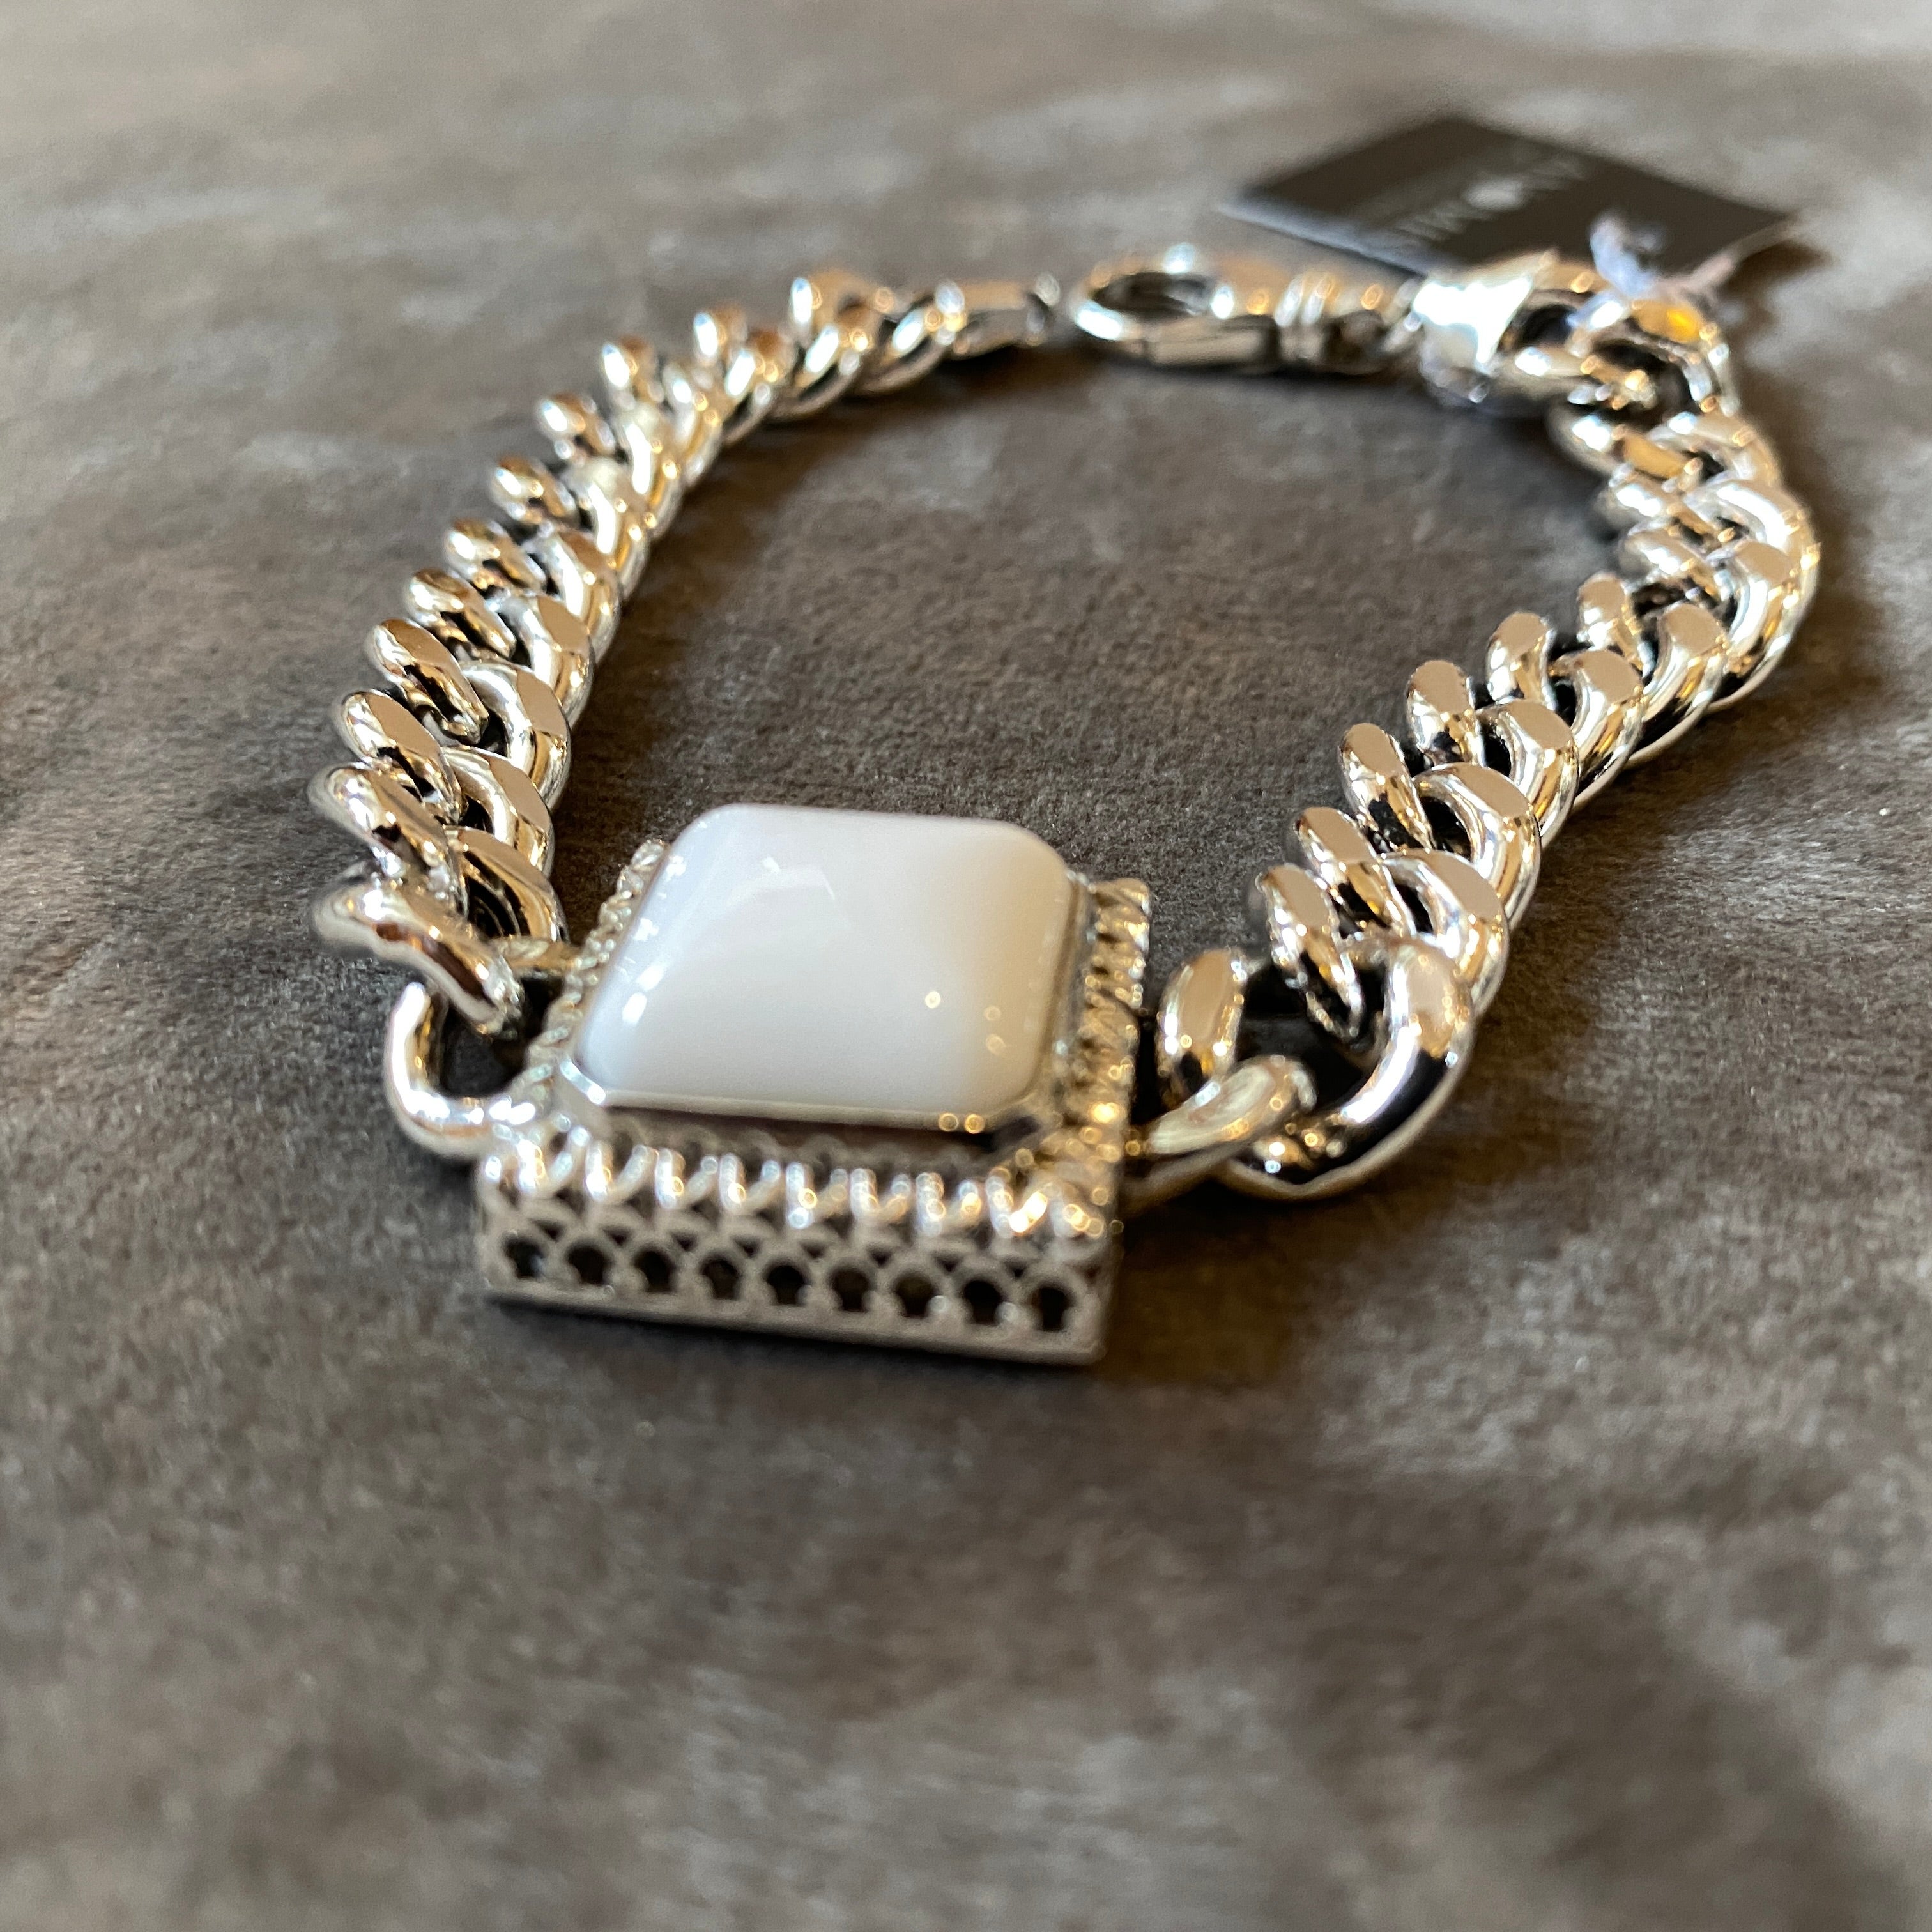 Ein nie getragenes Chanel-Kettenarmband aus Sterlingsilber, entworfen und hergestellt in Italien von Anomis (Original-Label). Es wurde in den neunziger Jahren in Italien handgefertigt. In der Mitte befindet sich ein quadratischer Cabochon aus weißem